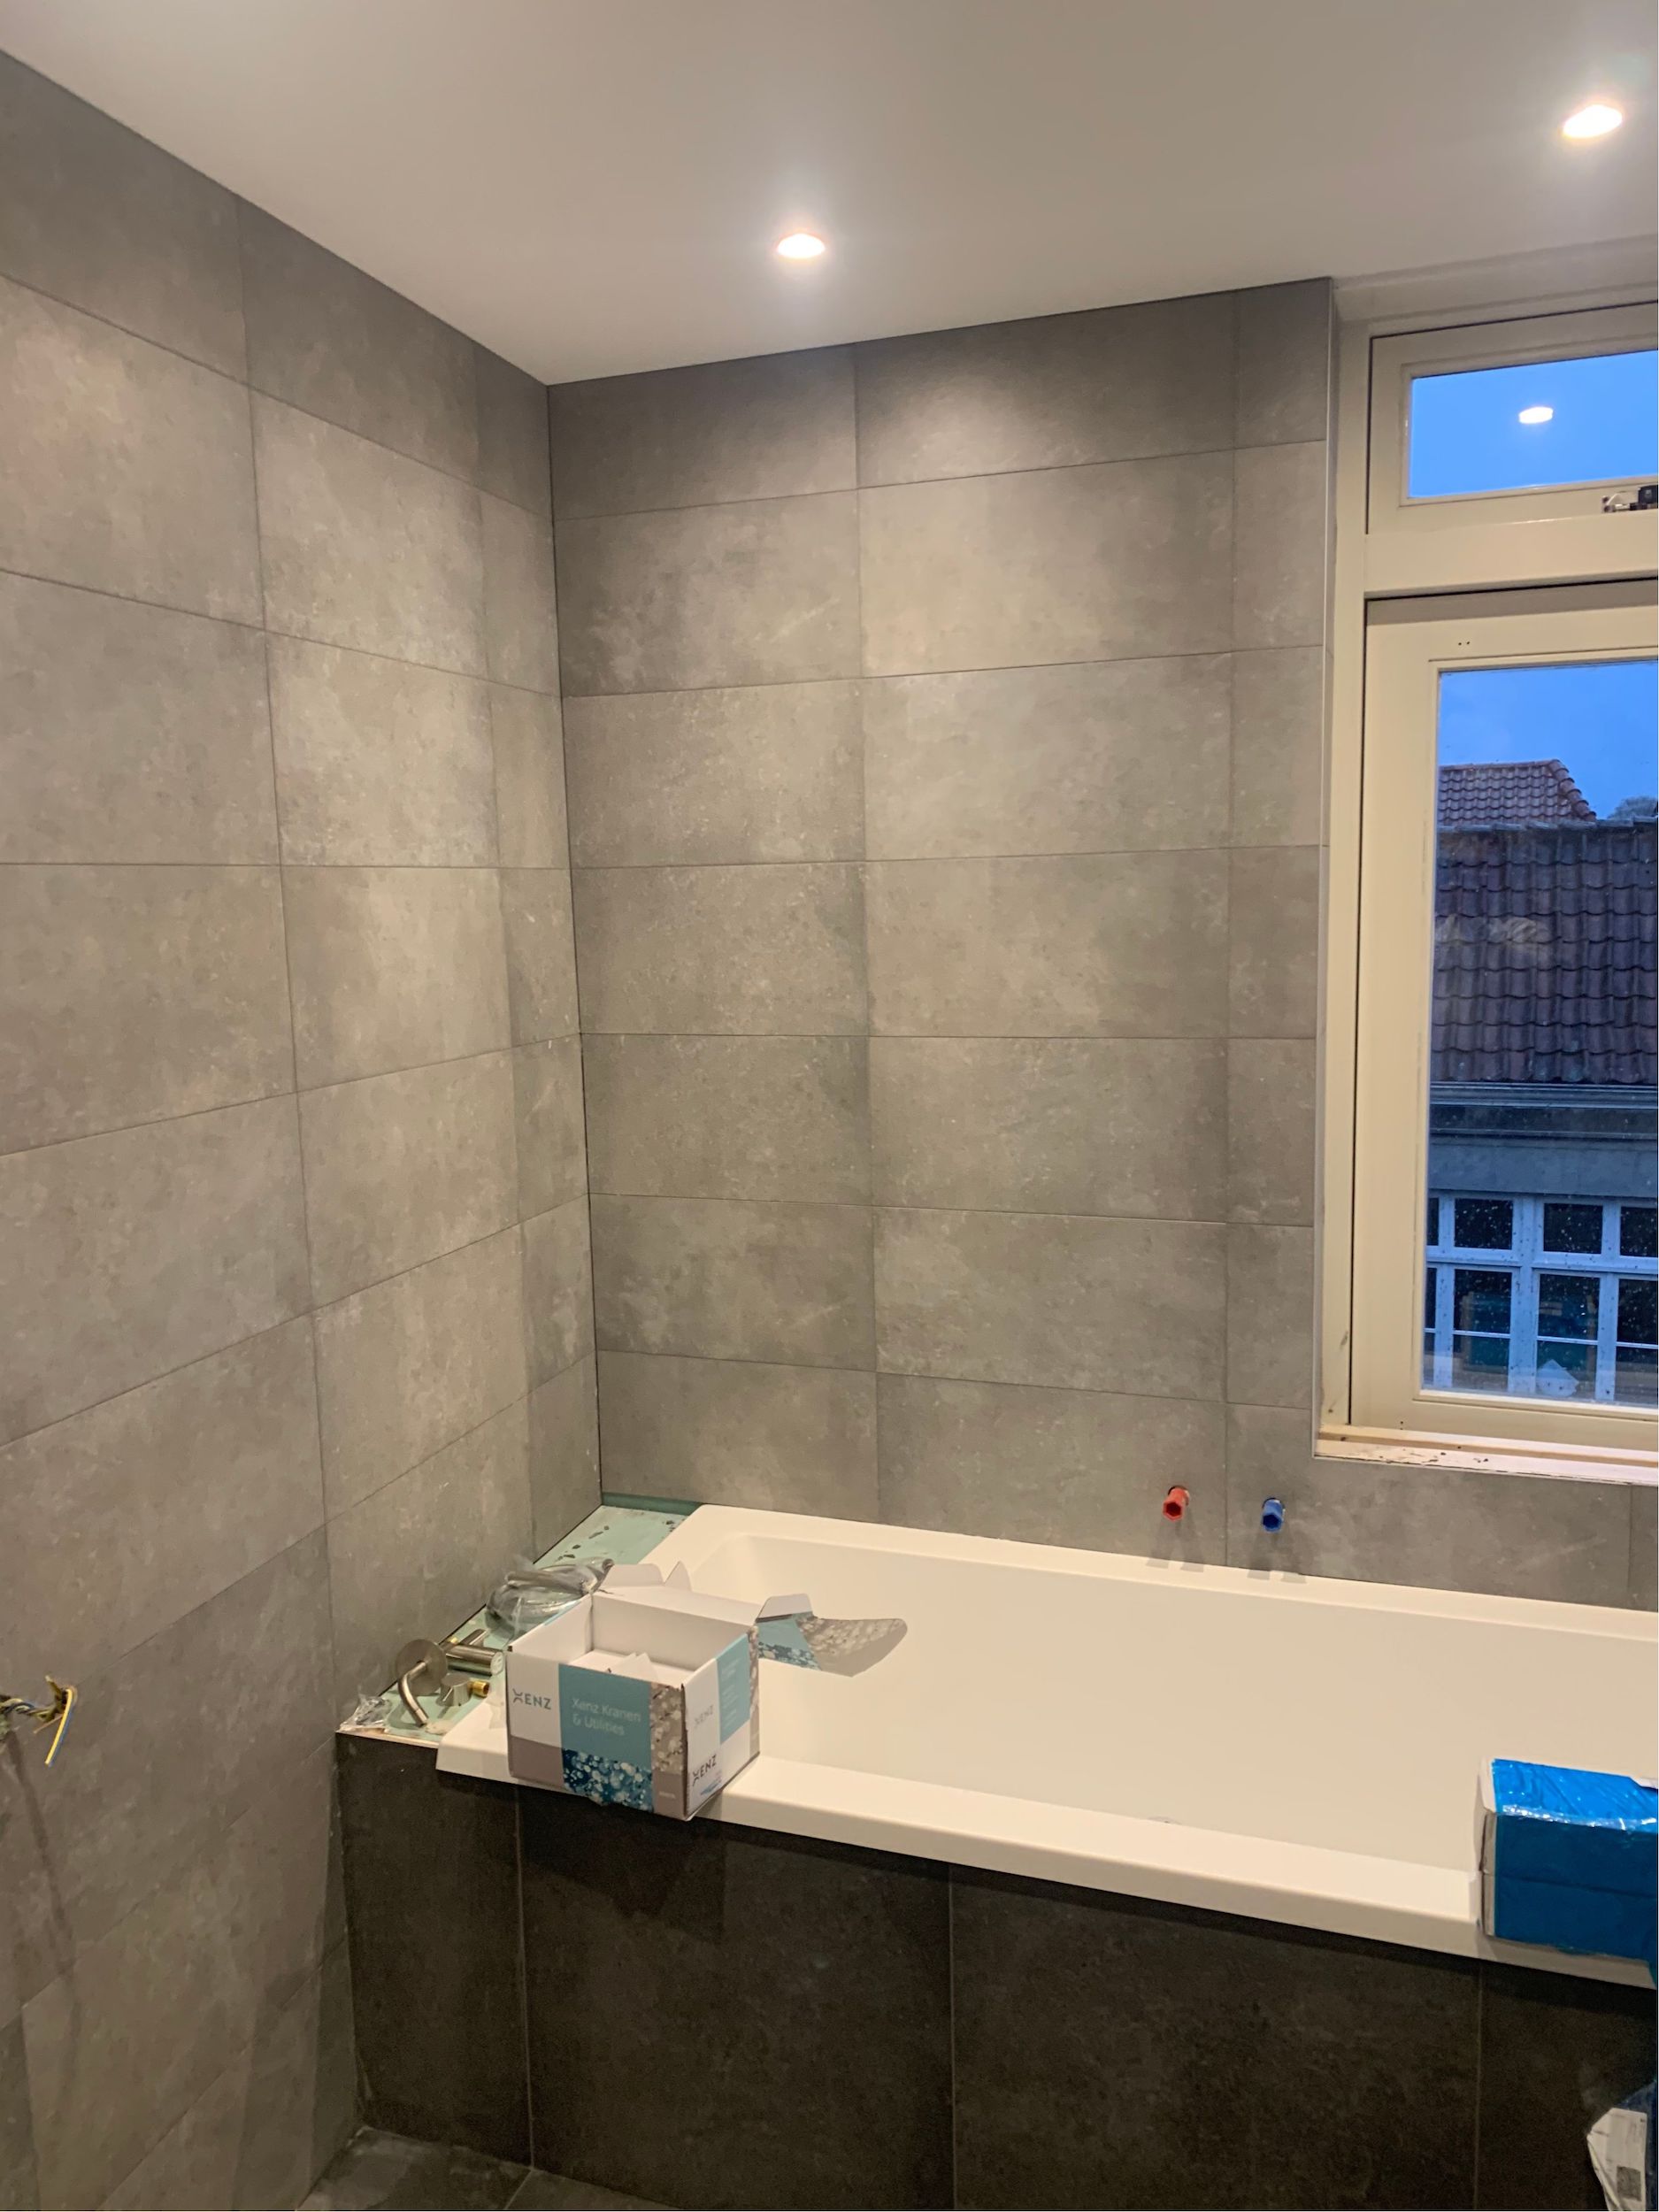 Bizot Installatietechniek – Project badkamer verbouwing 2020 9